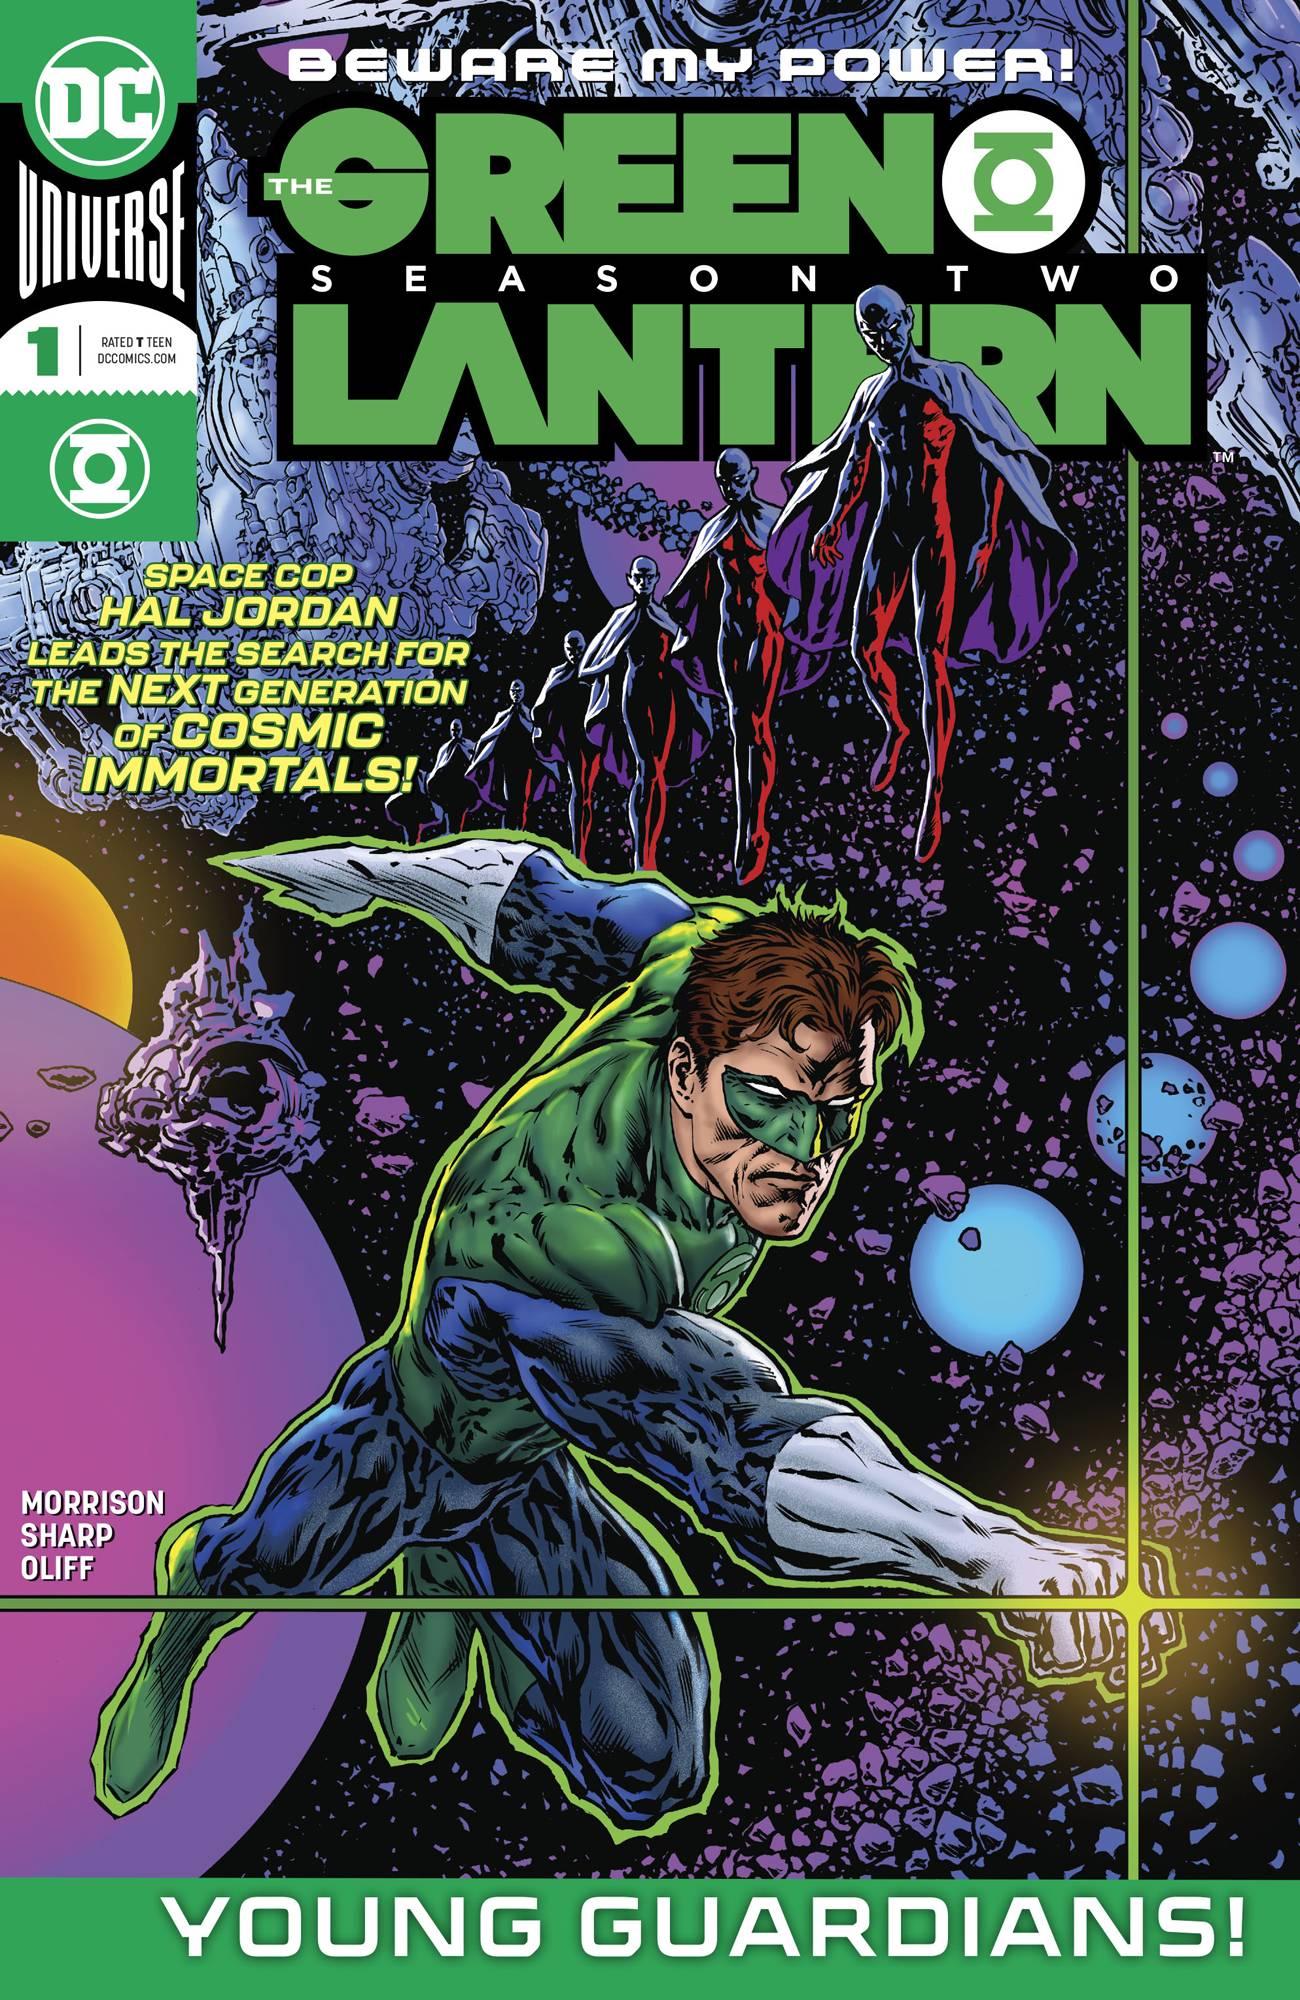 The Green Lantern: Season Two Vol. 1 #1